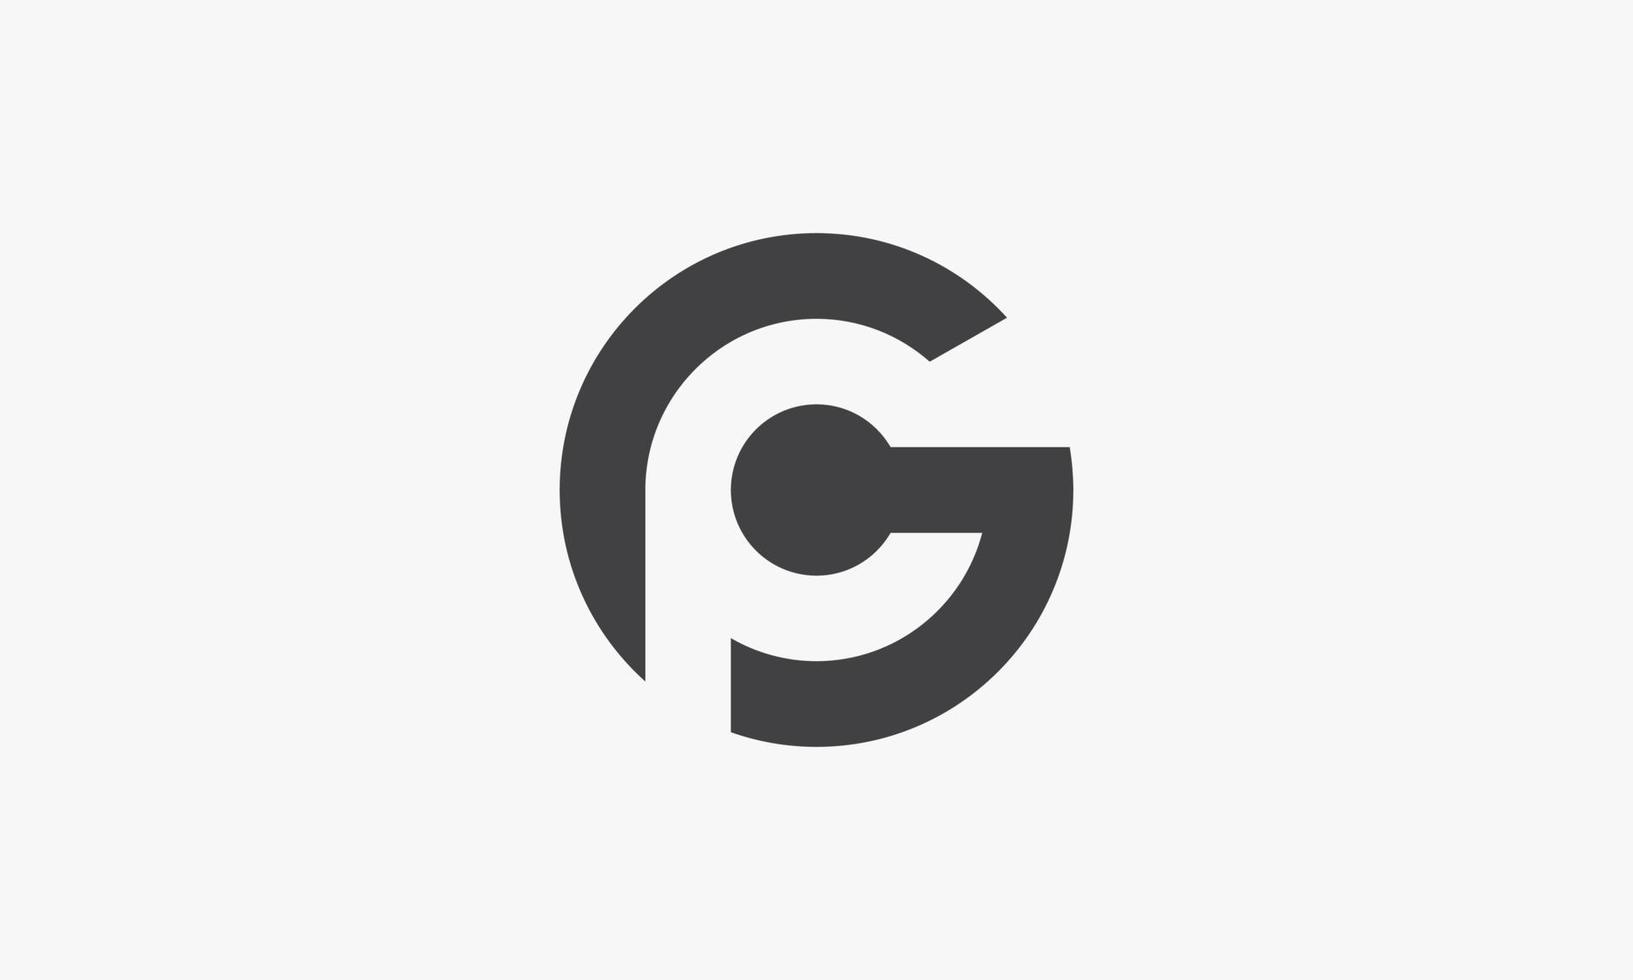 Concepto de logotipo letra gp o og aislado sobre fondo blanco. vector